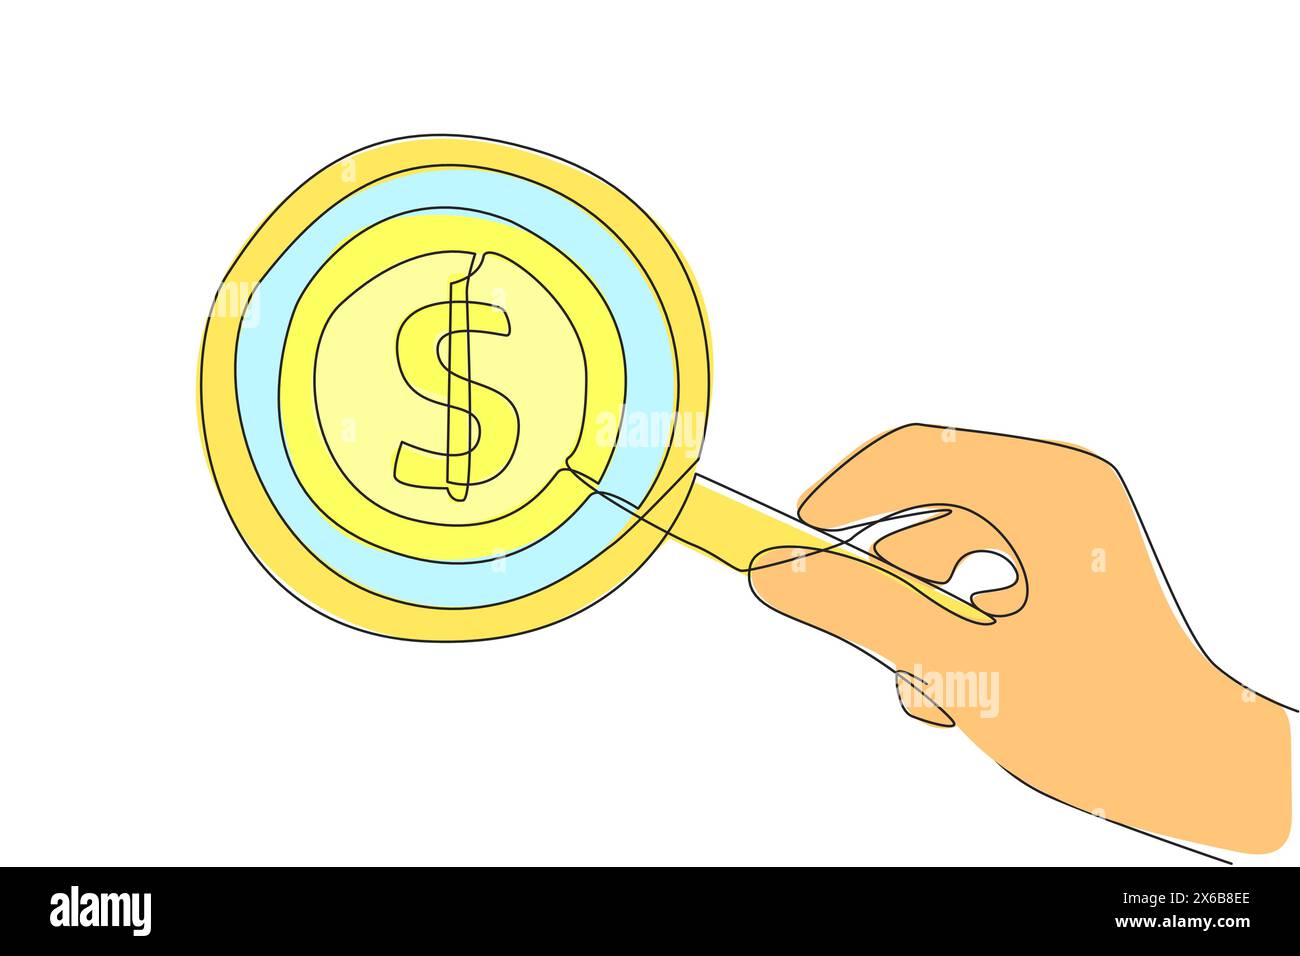 Un disegno a linea continua di una grande lente d'ingrandimento mette in evidenza una moneta da un dollaro. Raccogliere monete per moneta, innovazione nel business per guadagnare Illustrazione Vettoriale